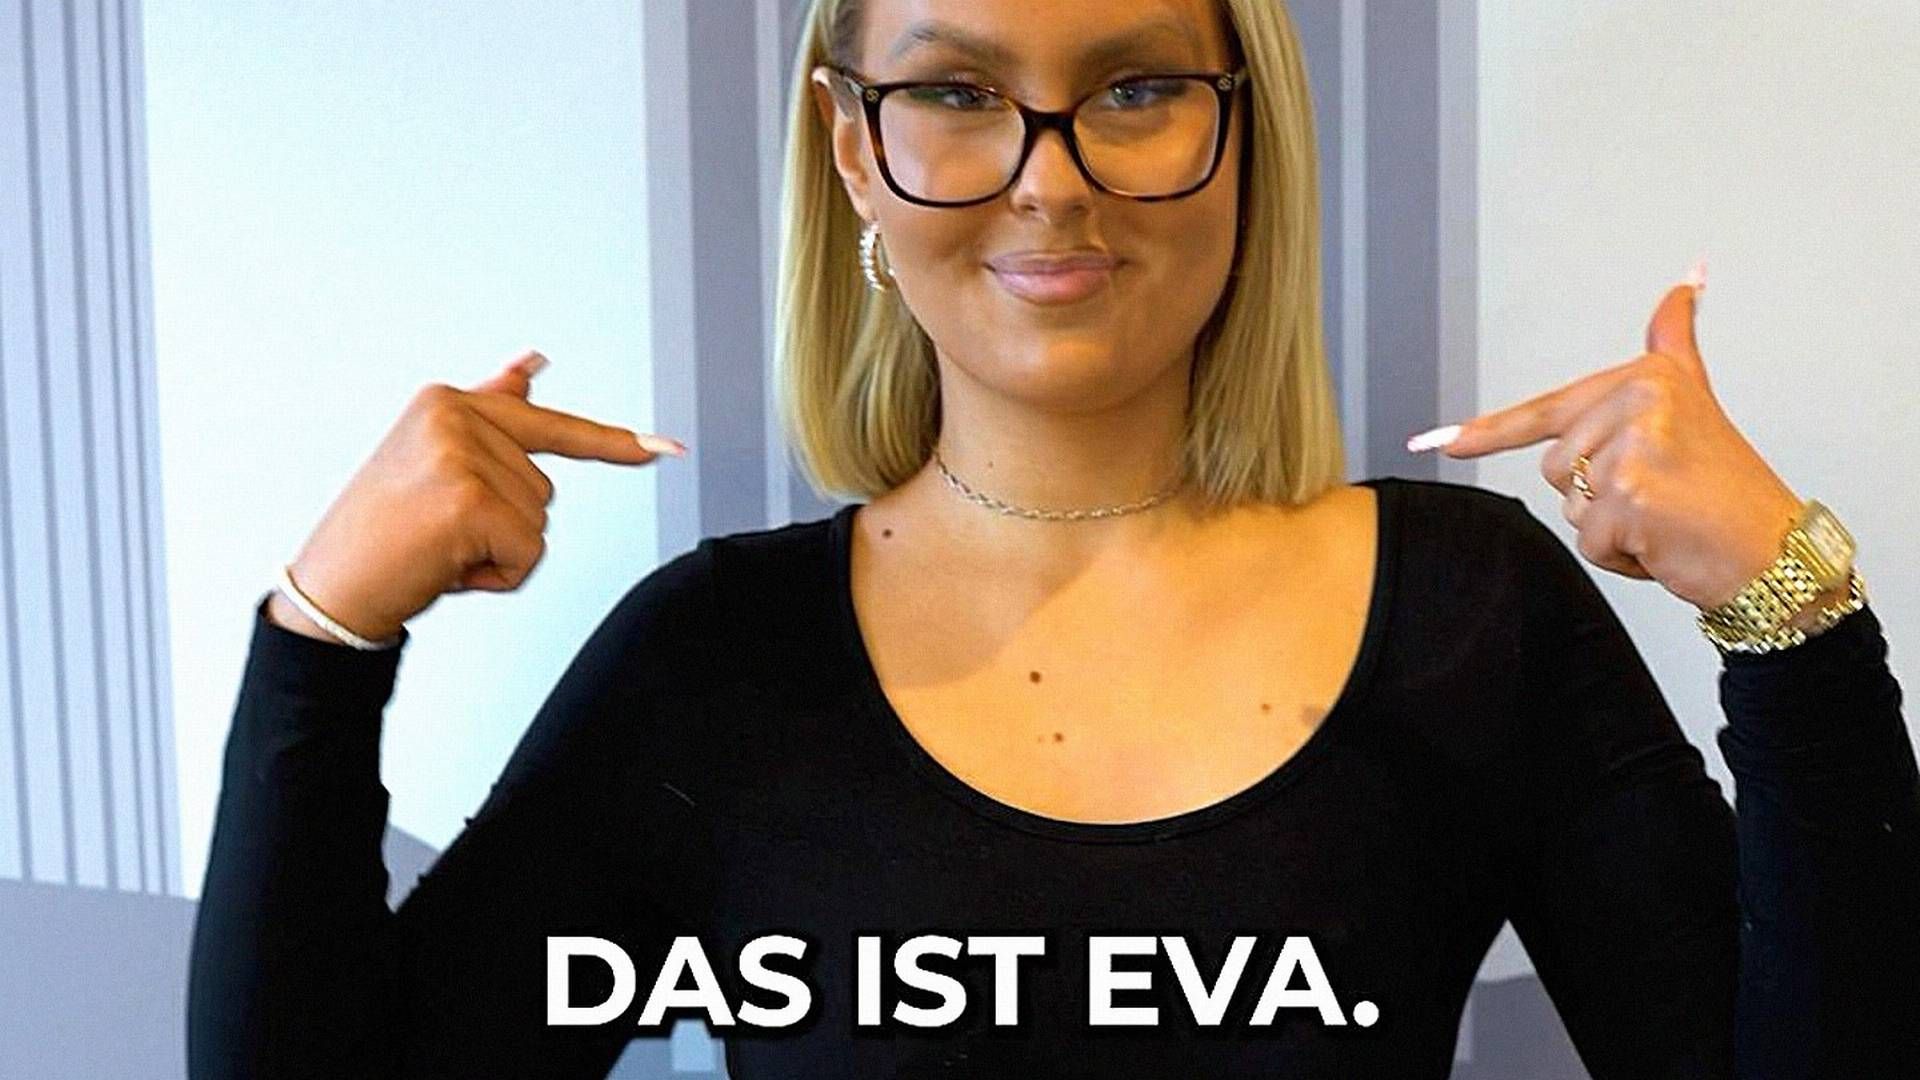 "Das ist Eva": Dieses Video der Sparkasse Dortmund hat auf TikTok schon 1,2 Millionen Klicks generiert. | Foto: Sparkasse Dortmund